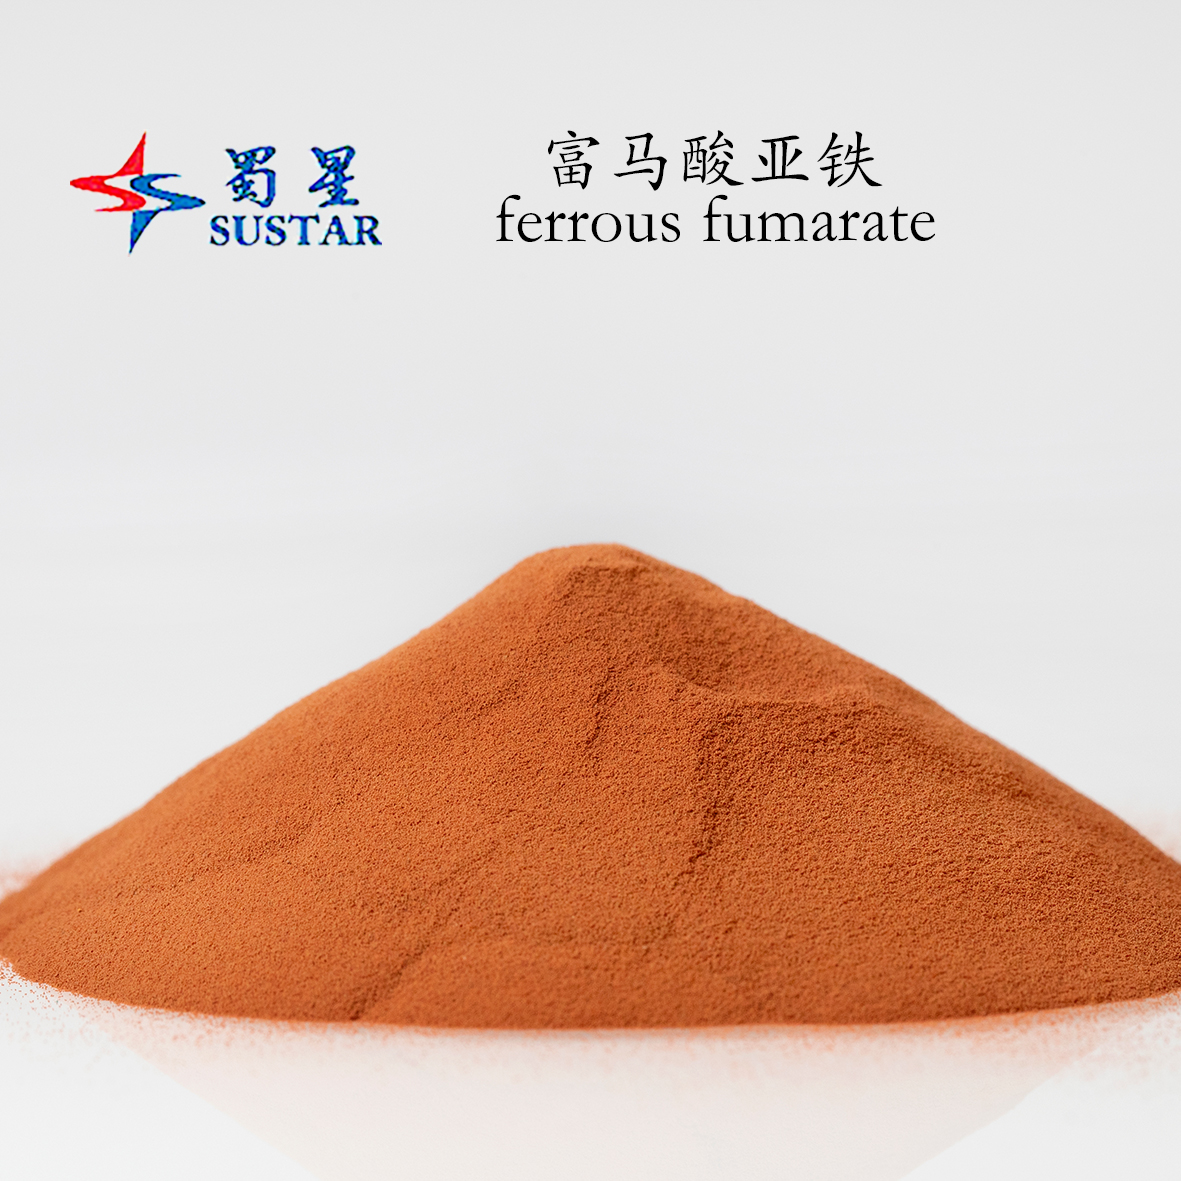 Bạn có quan tâm đến loại thức ăn chứa sắt fumarate không?